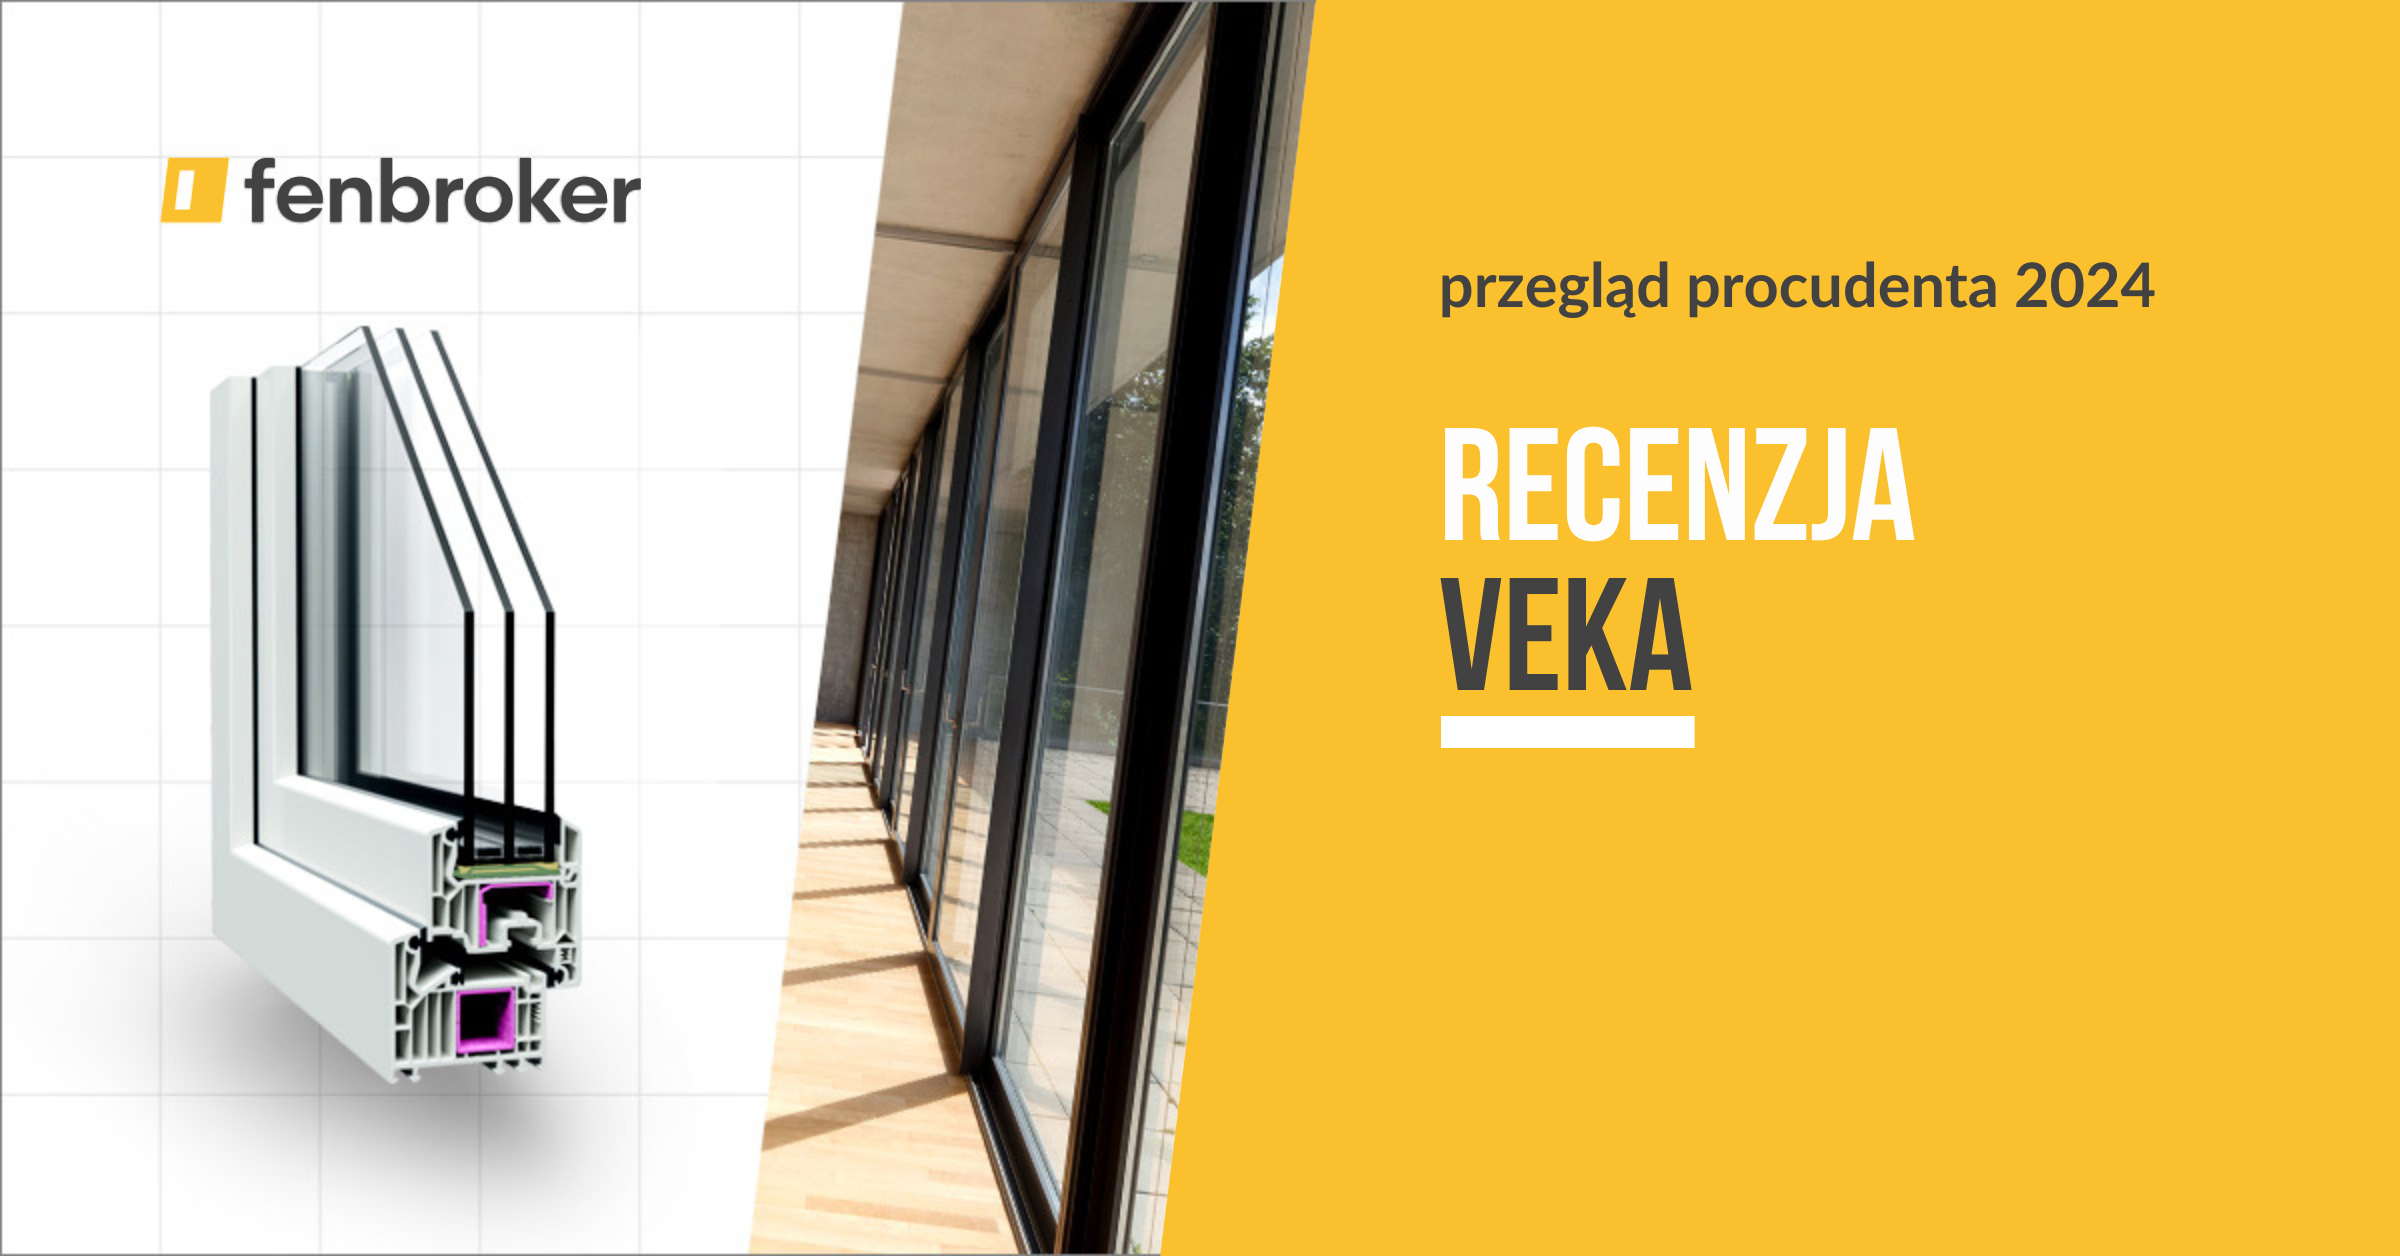 Czy okna PCV firmy VEKA to dobry wybór? Recenzja producenta 2024 | fenbroker blog